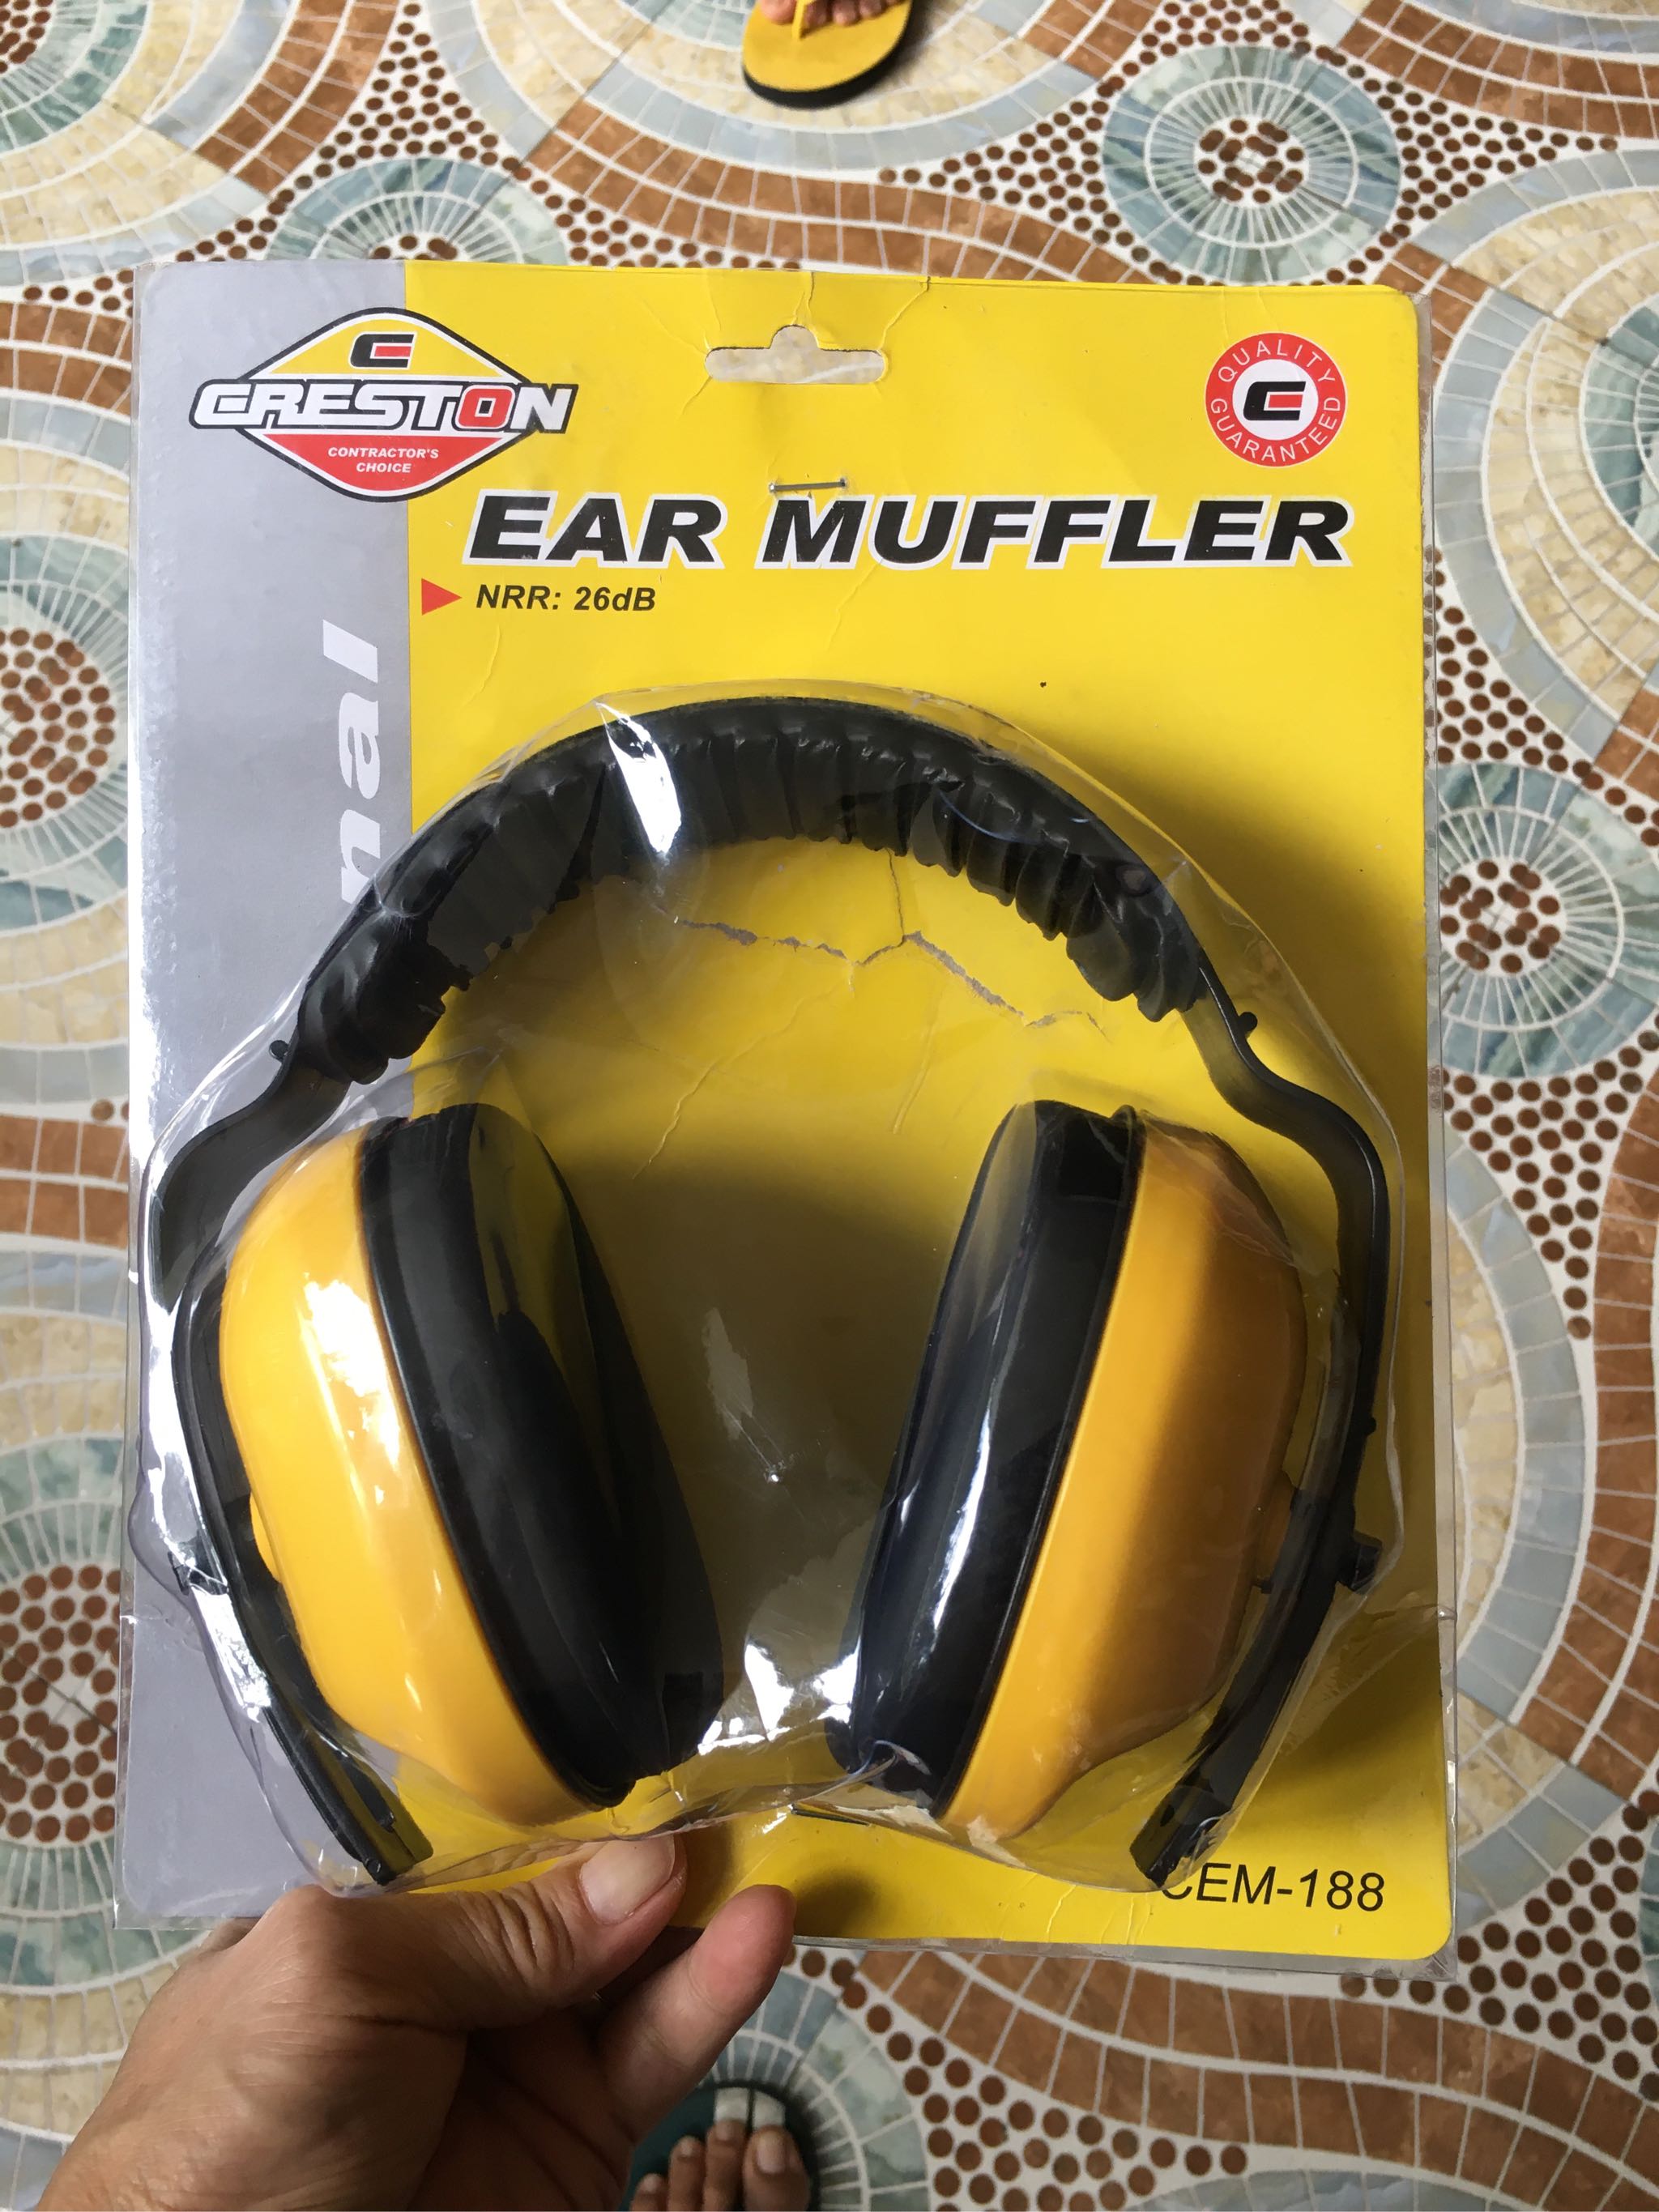 Ear muffs – Creston Hardware